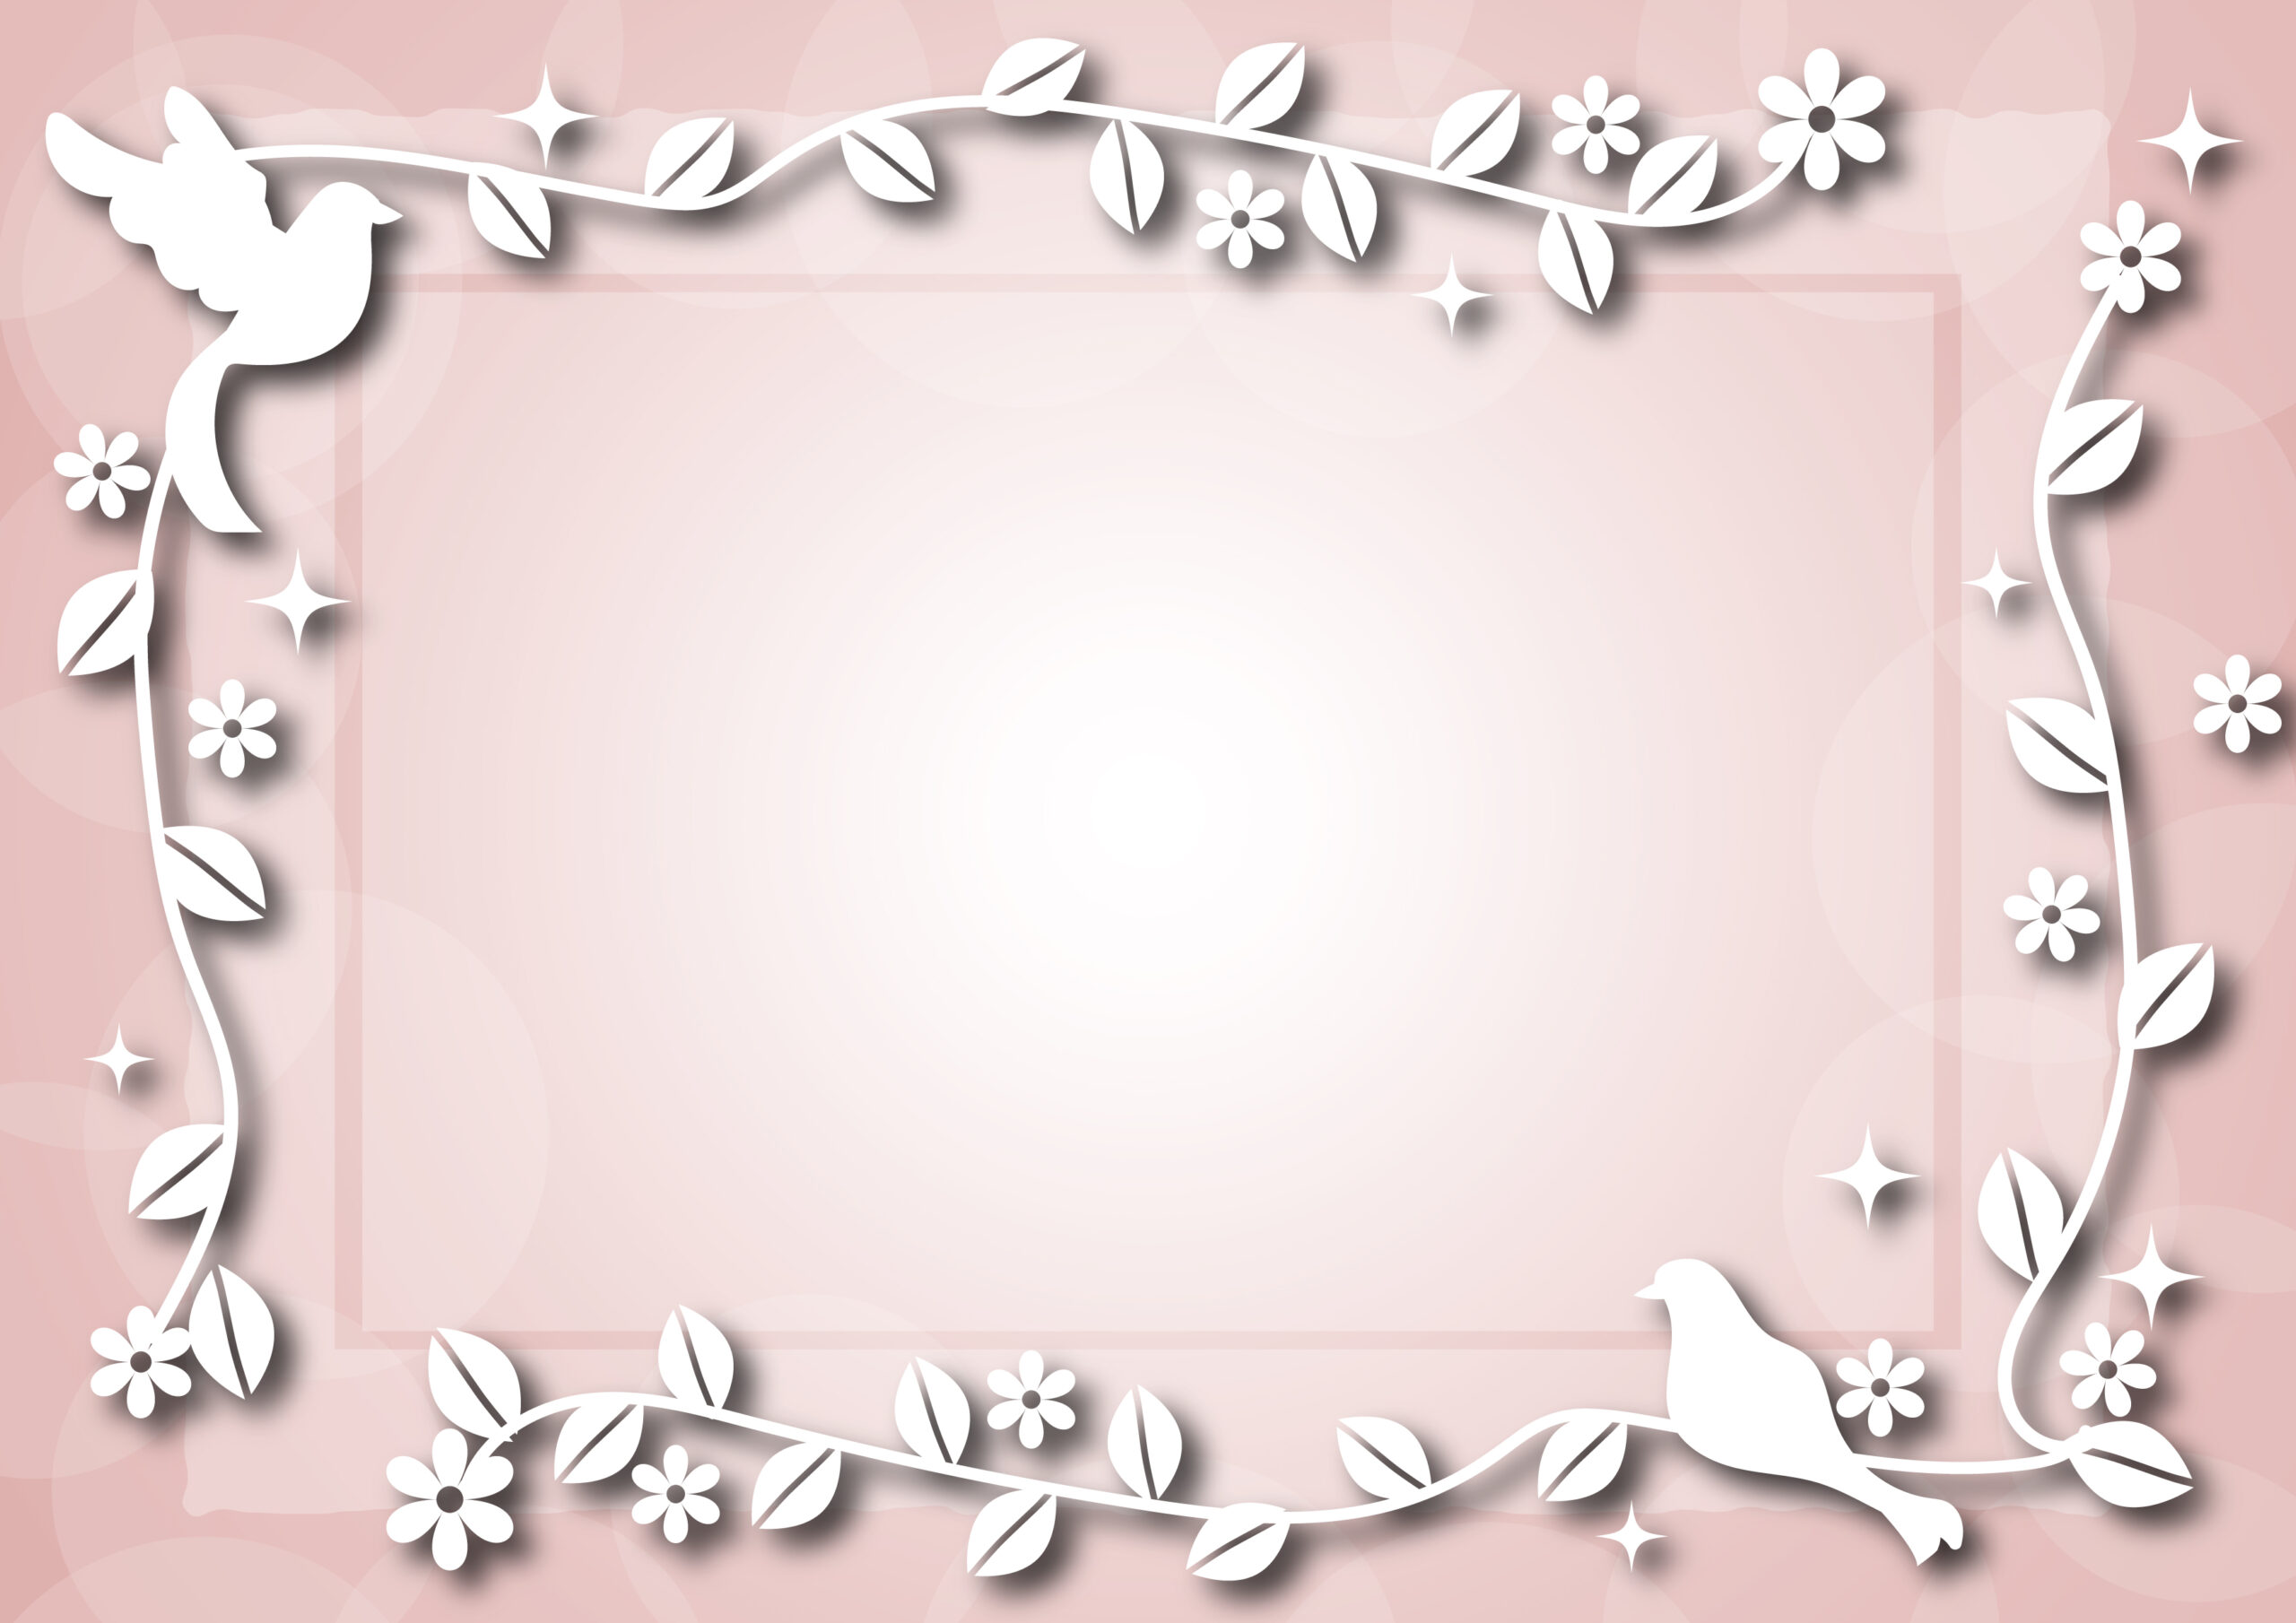 結婚式の招待状、ハガキ、式場案内のパンフレット表紙などにおすすめする鳩と花、蔓のイラストデザインフレームとなります。淡いピンク色の背景が落ち着いた上品な印象を感じさせるおしゃれな飾り枠となっております。ダウンロード：JPGA4サ